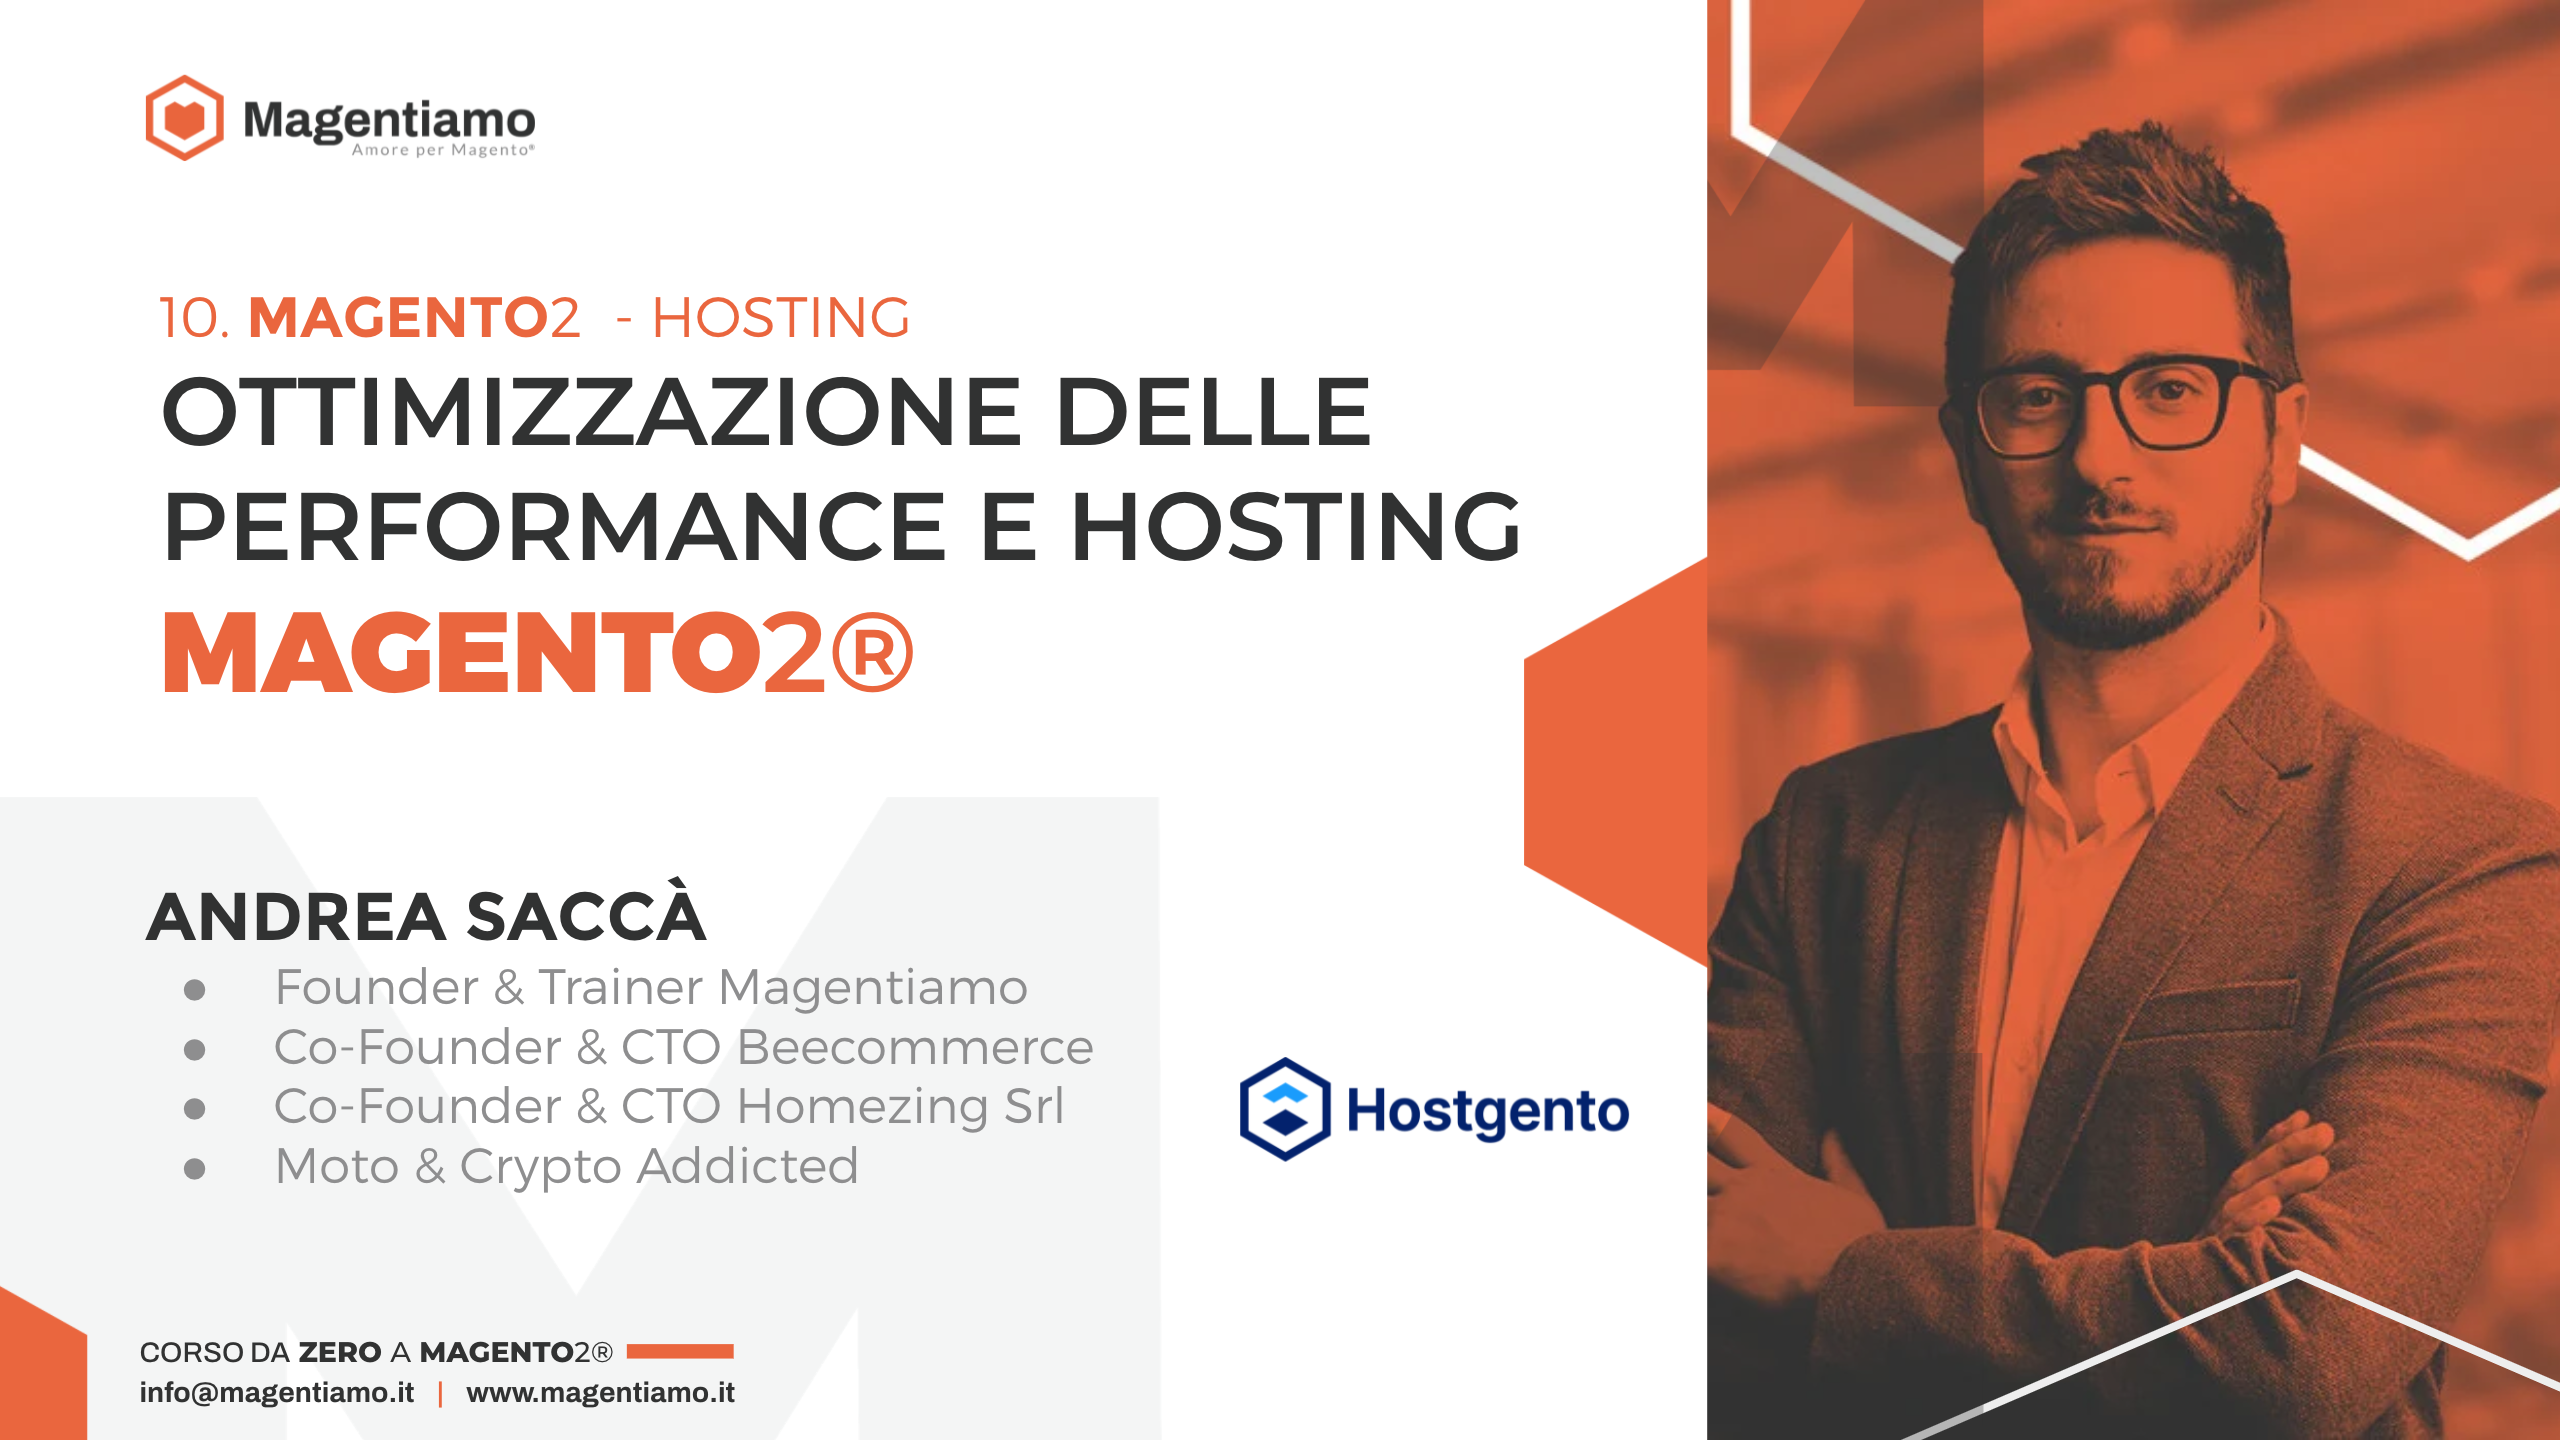 10. HOSTING Ottimizzazione delle performance e hosting Magento 2 Andrea Saccà - HOSTGENTO